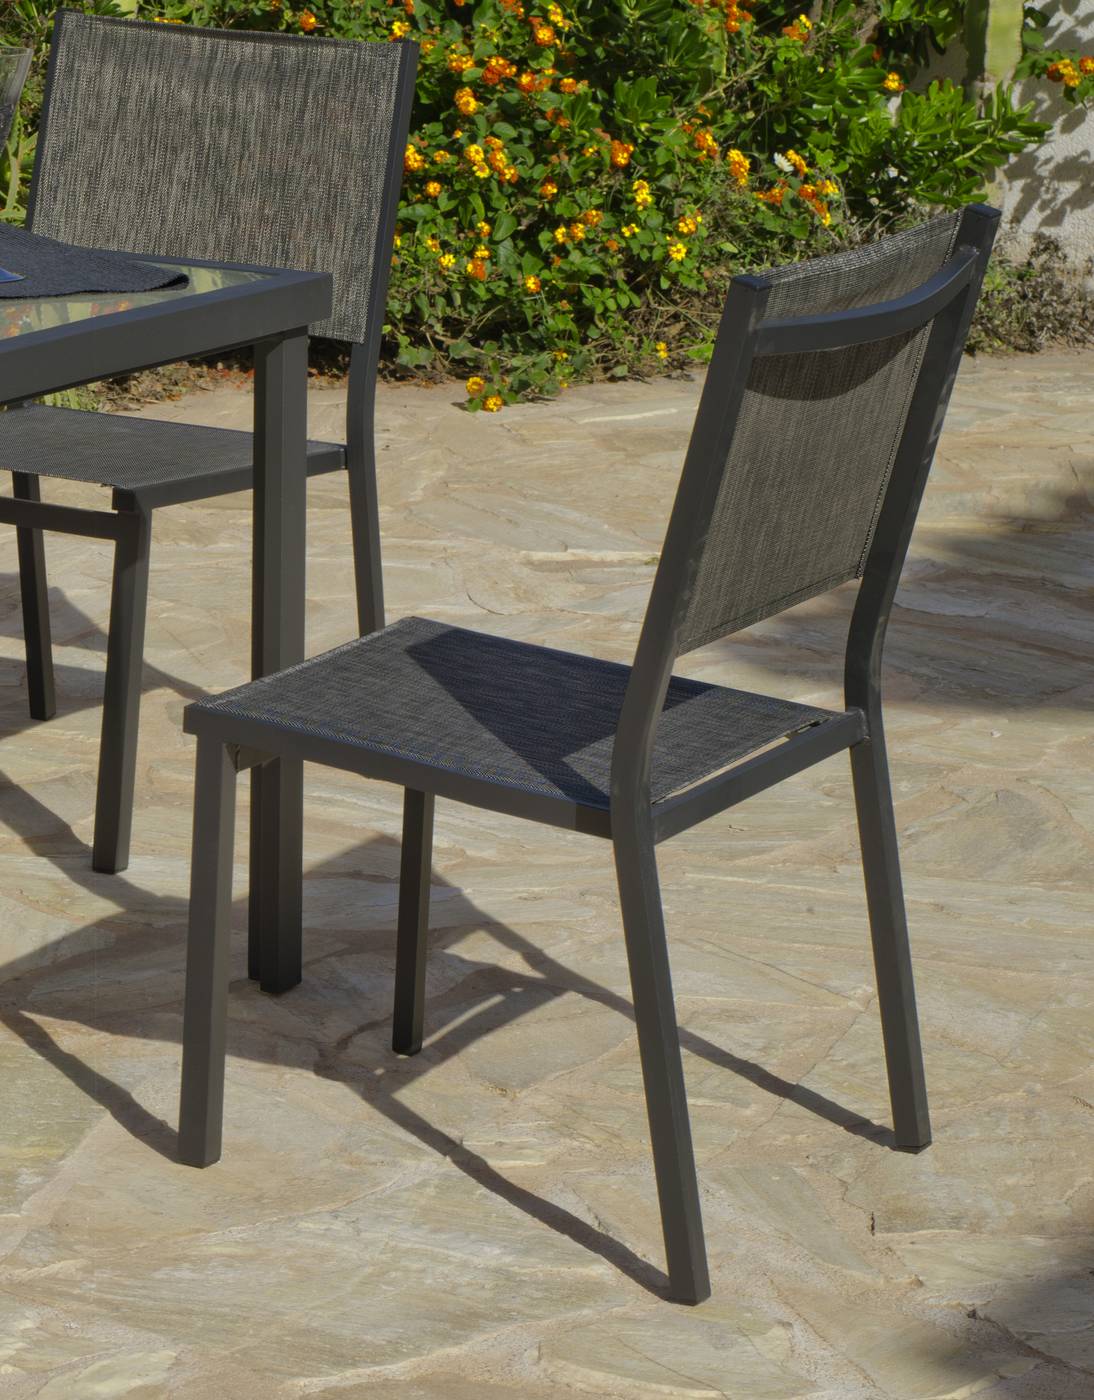 Conjunto Aluminio Horizon 70-4 - Conjunto de aluminio color antracita: mesa cuadrada de 70 cm. + 4 sillas de aluminio y textilen